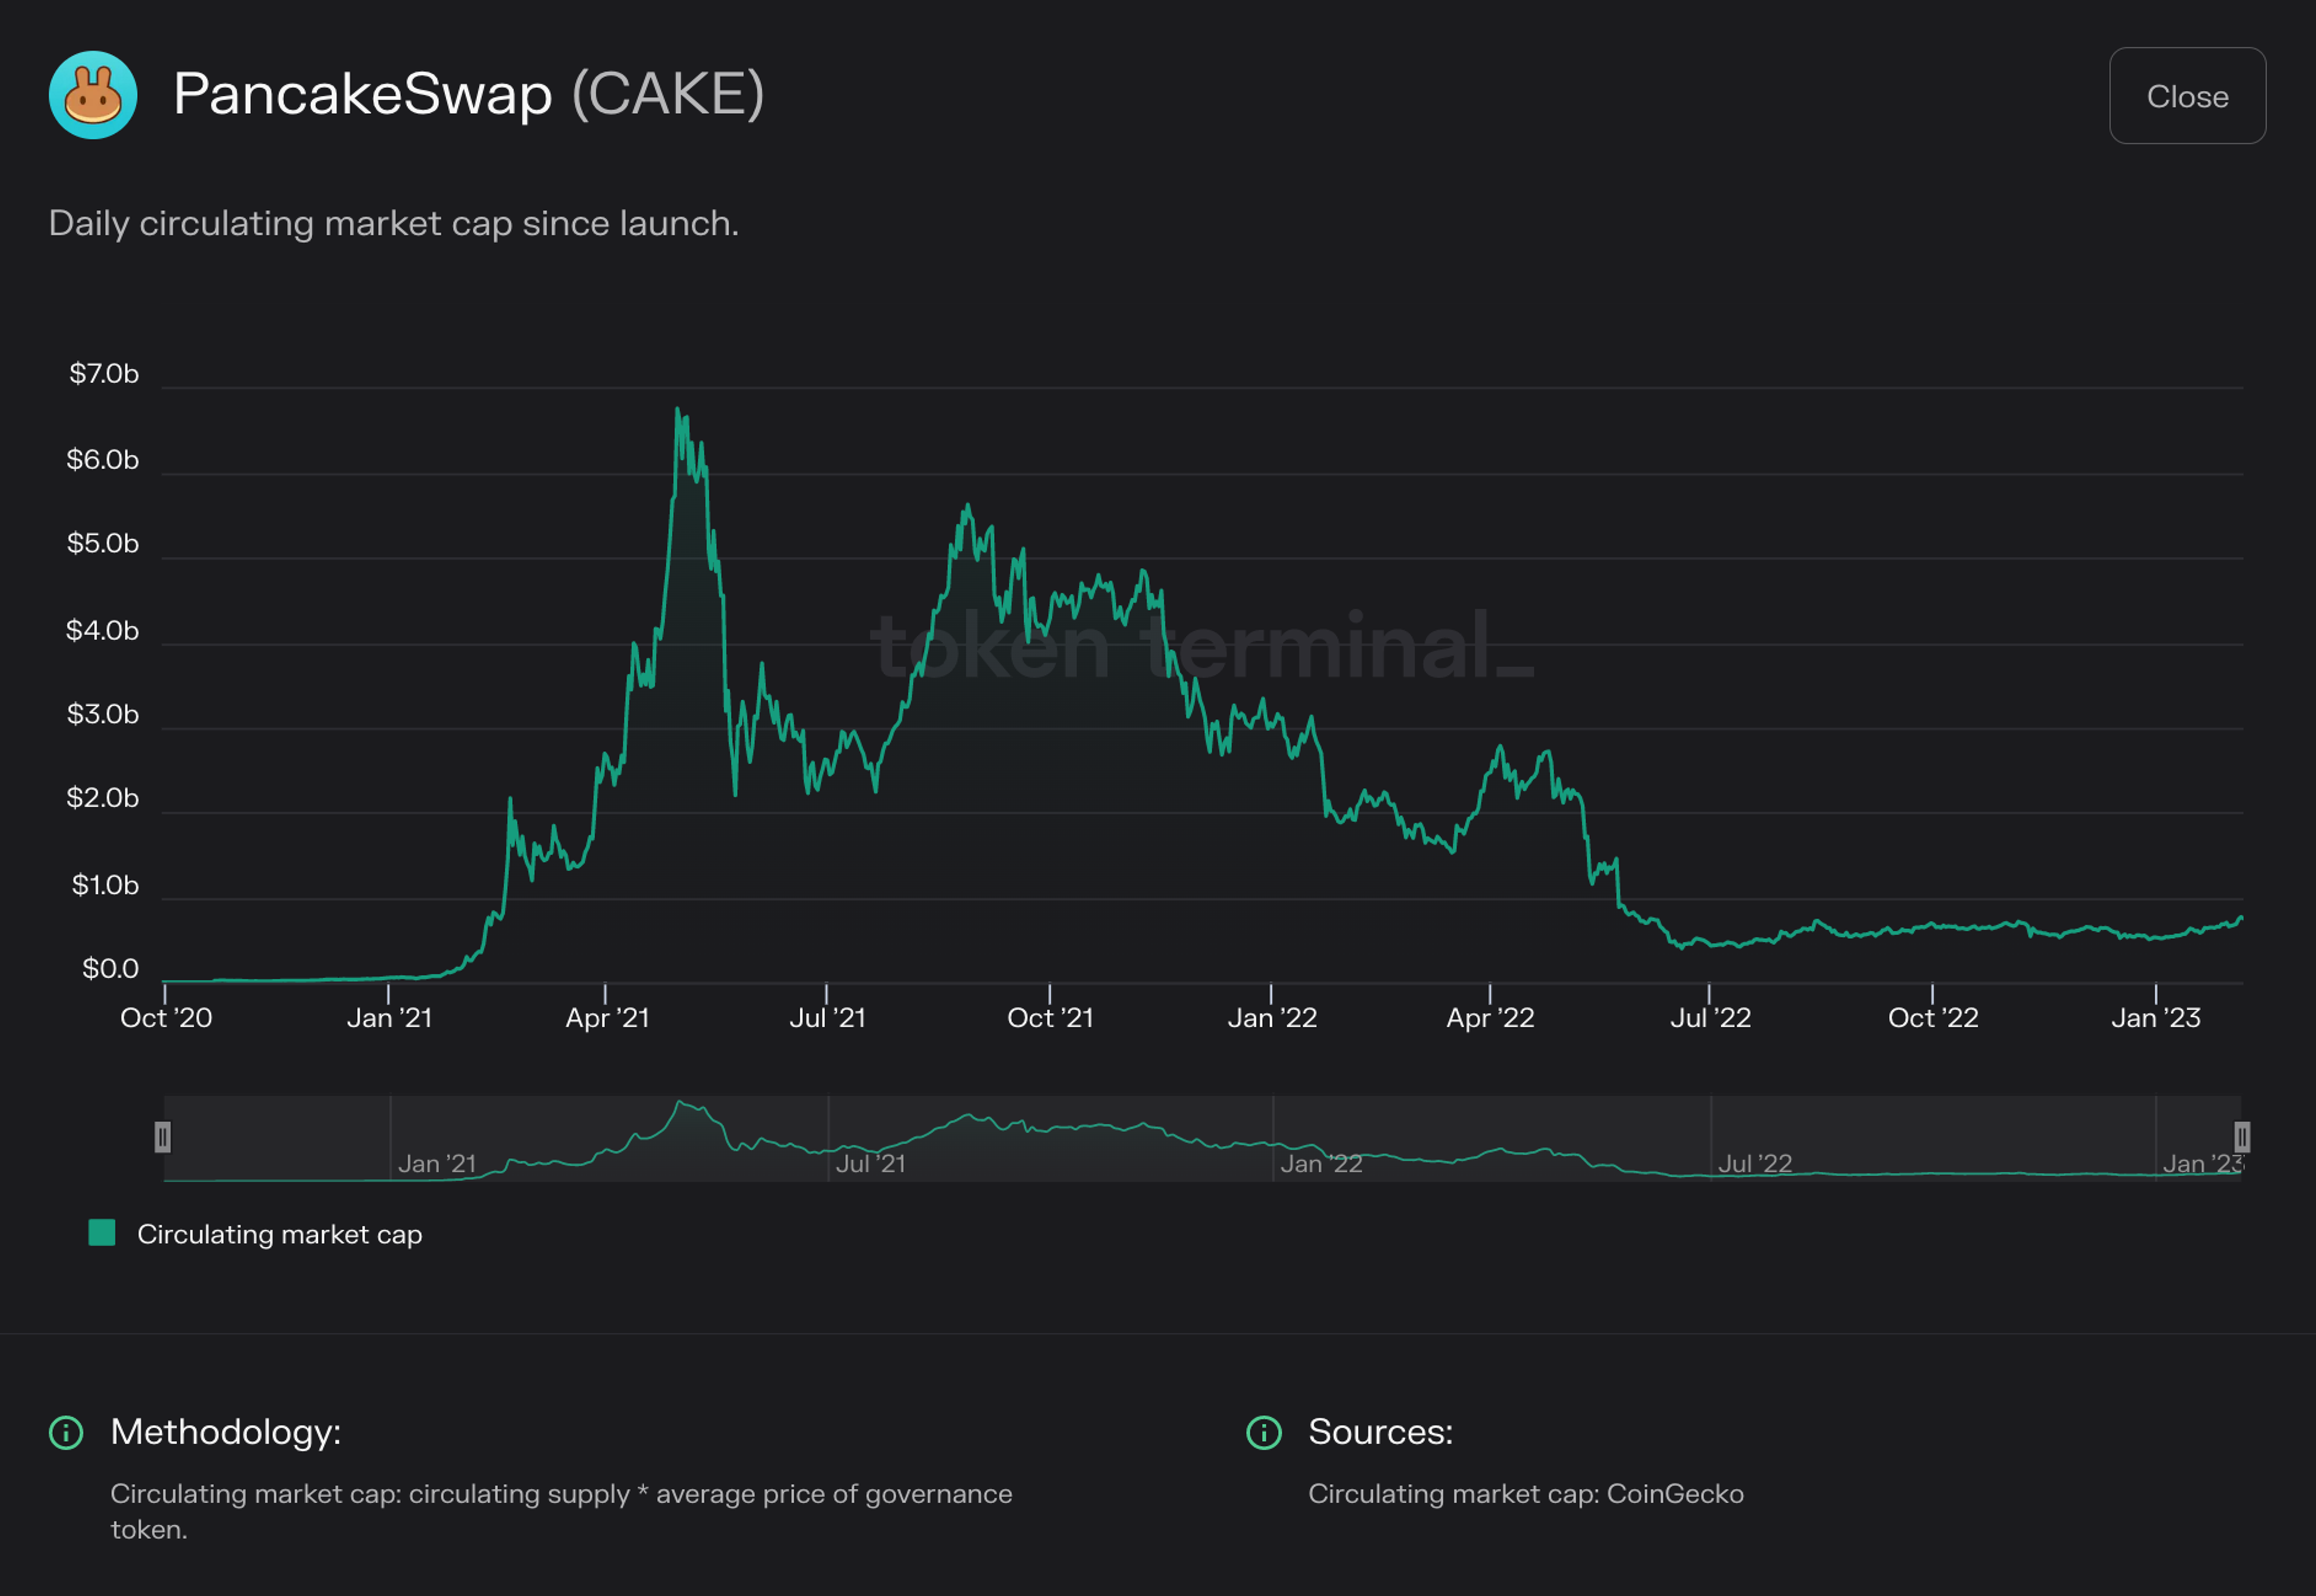 Chart of PancakeSwap circulating market cap